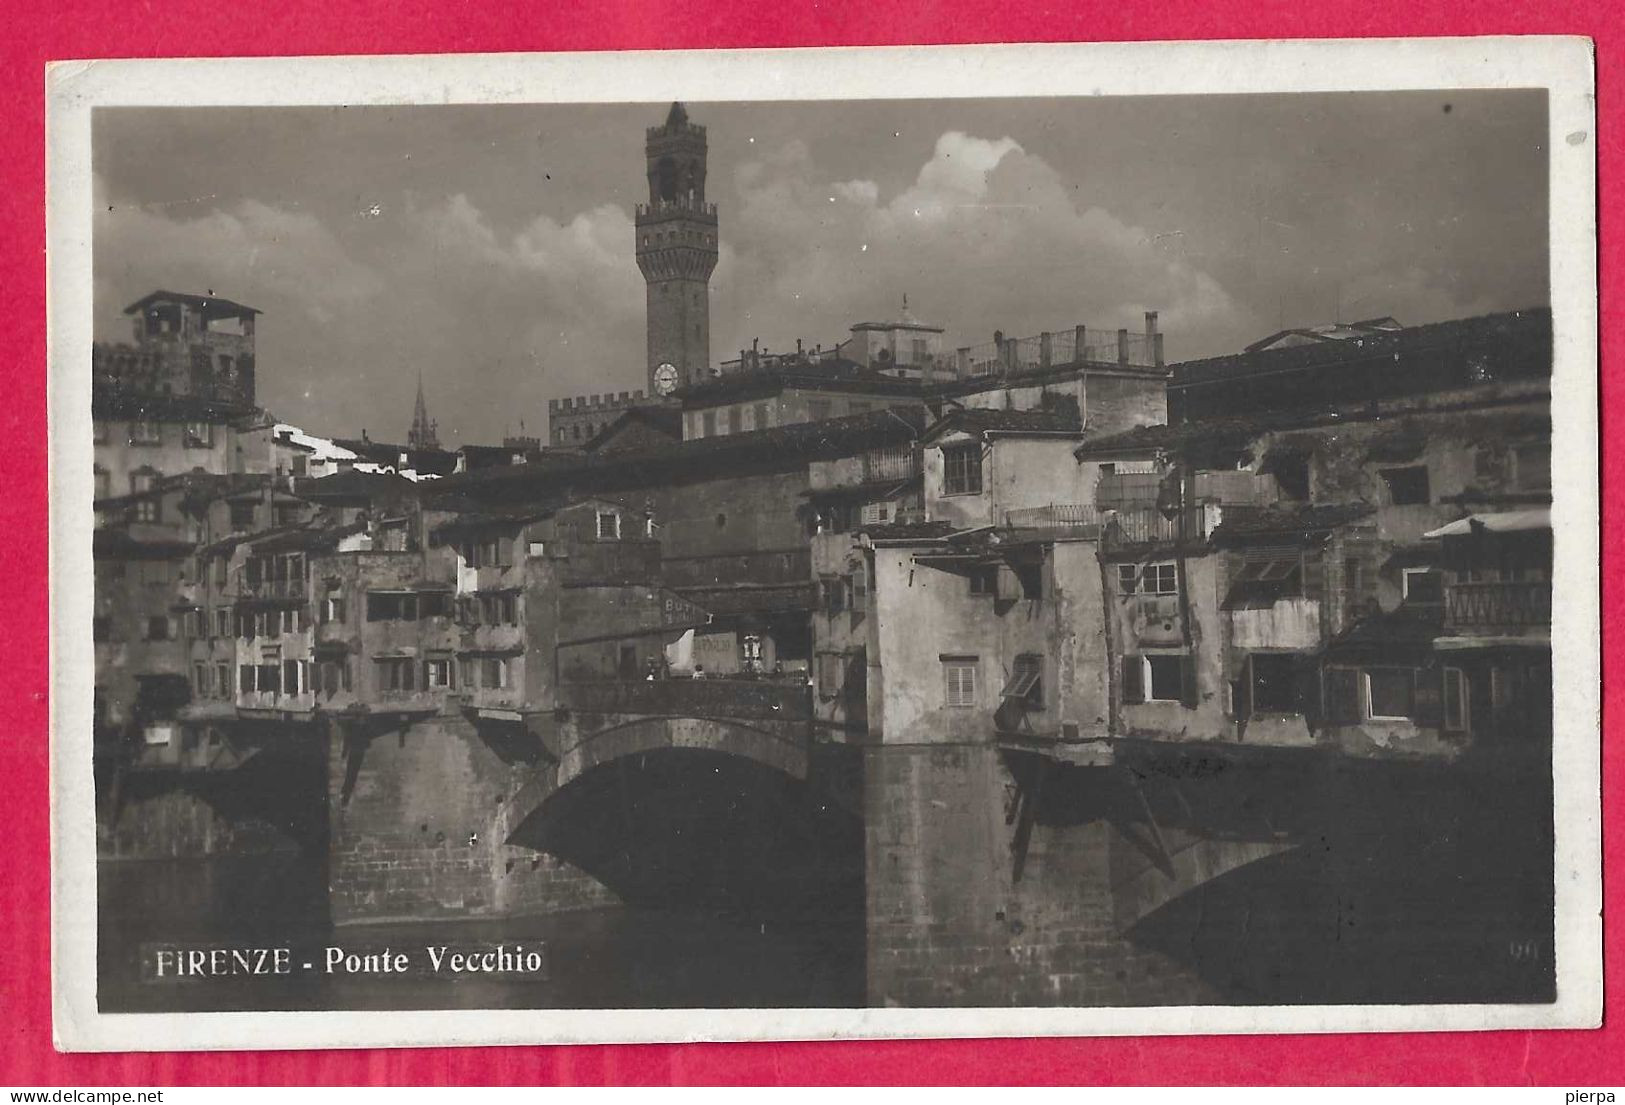 FIRENZE - PONTE VECCHIO - FORMATO PICCOLO - EDIZ. P.G.C.F. - VIAGGIATA 1920 PER LA SVIZZERA - Firenze (Florence)